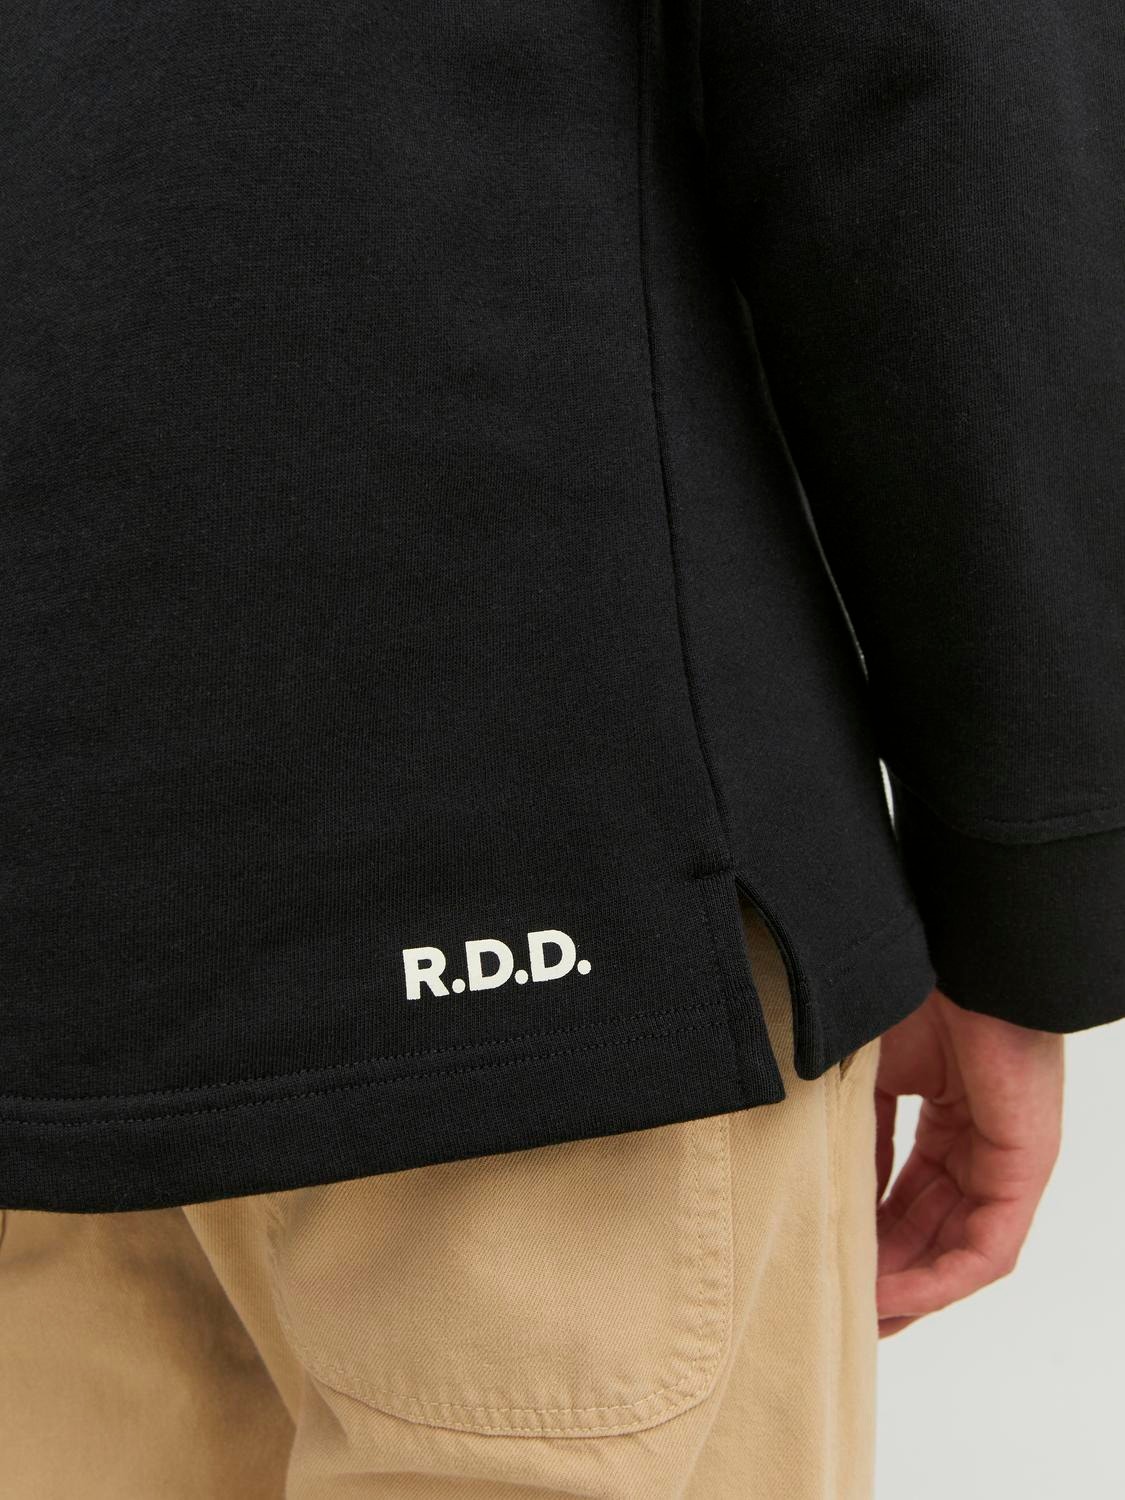 Jack & Jones RDD Bedrukt Sweatshirt met ronde hals -Black - 12243501